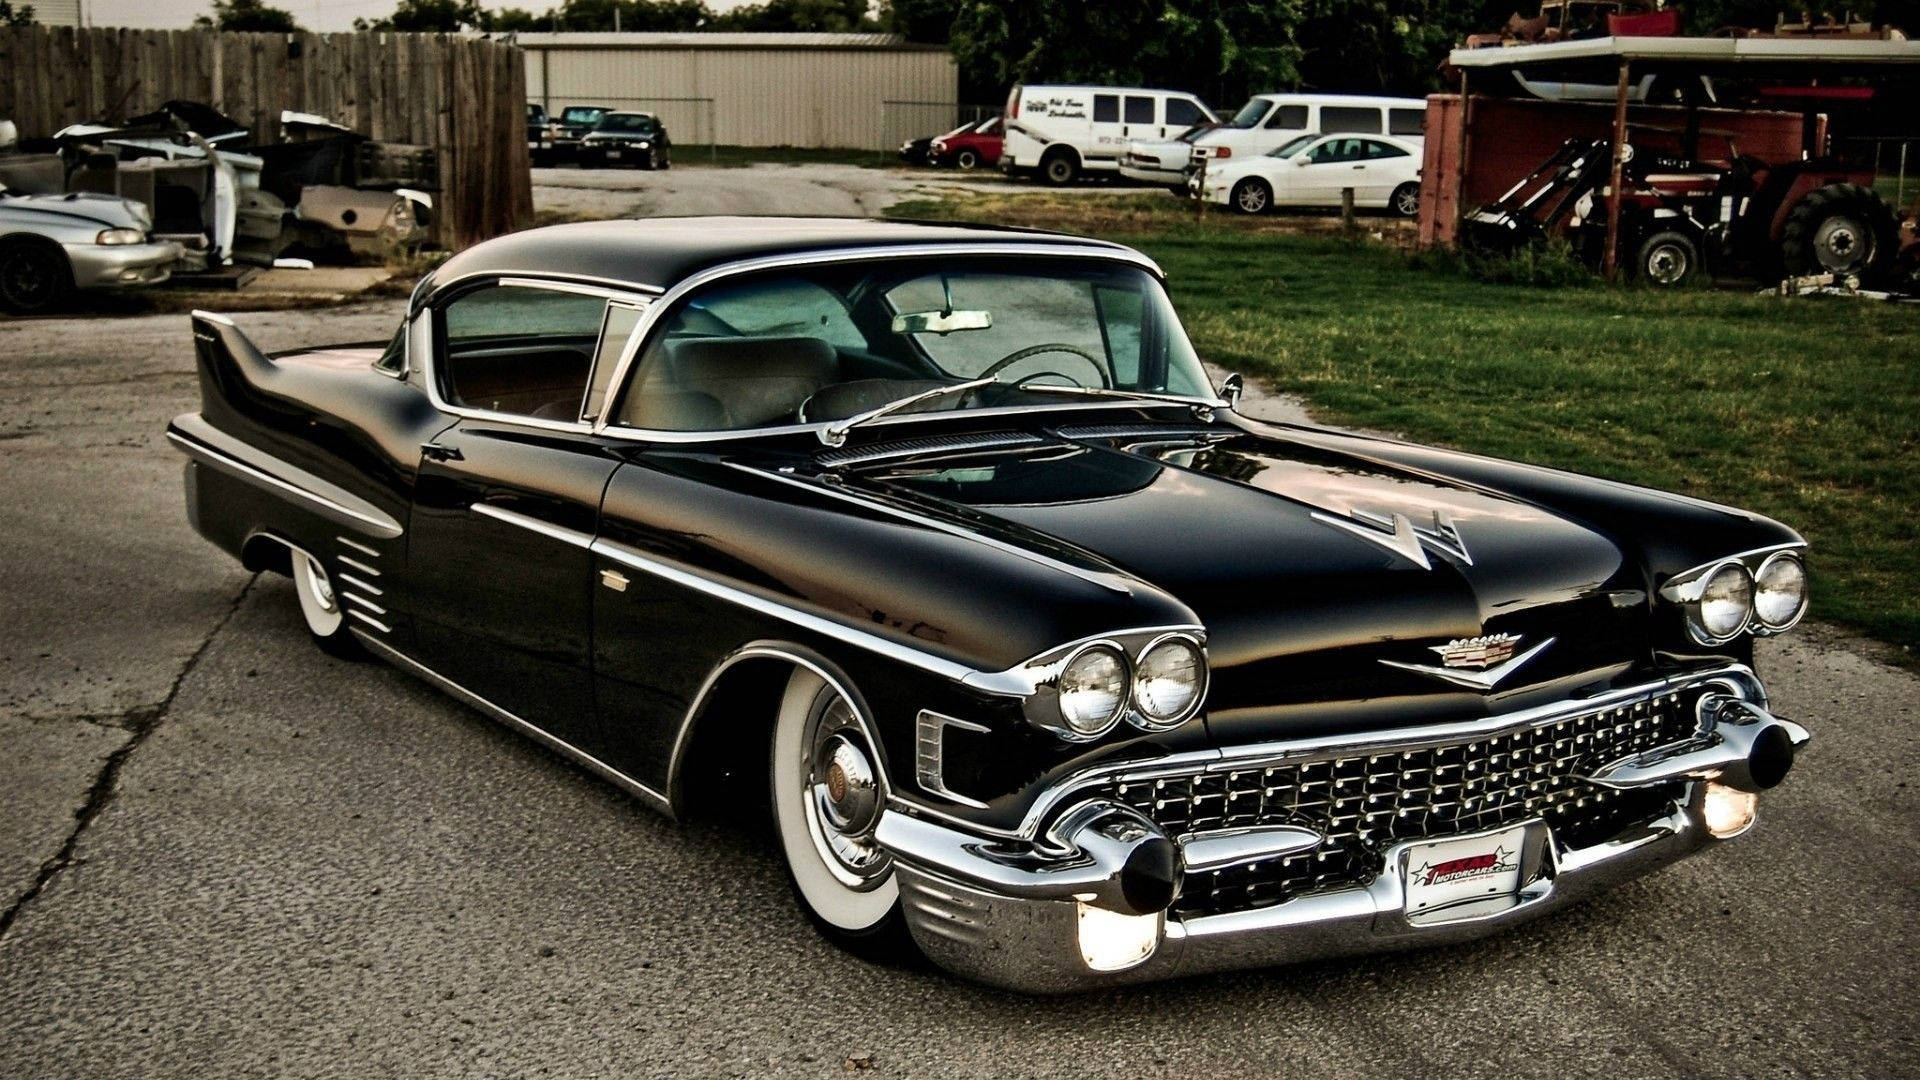 Black Cadillac El Dorado Background